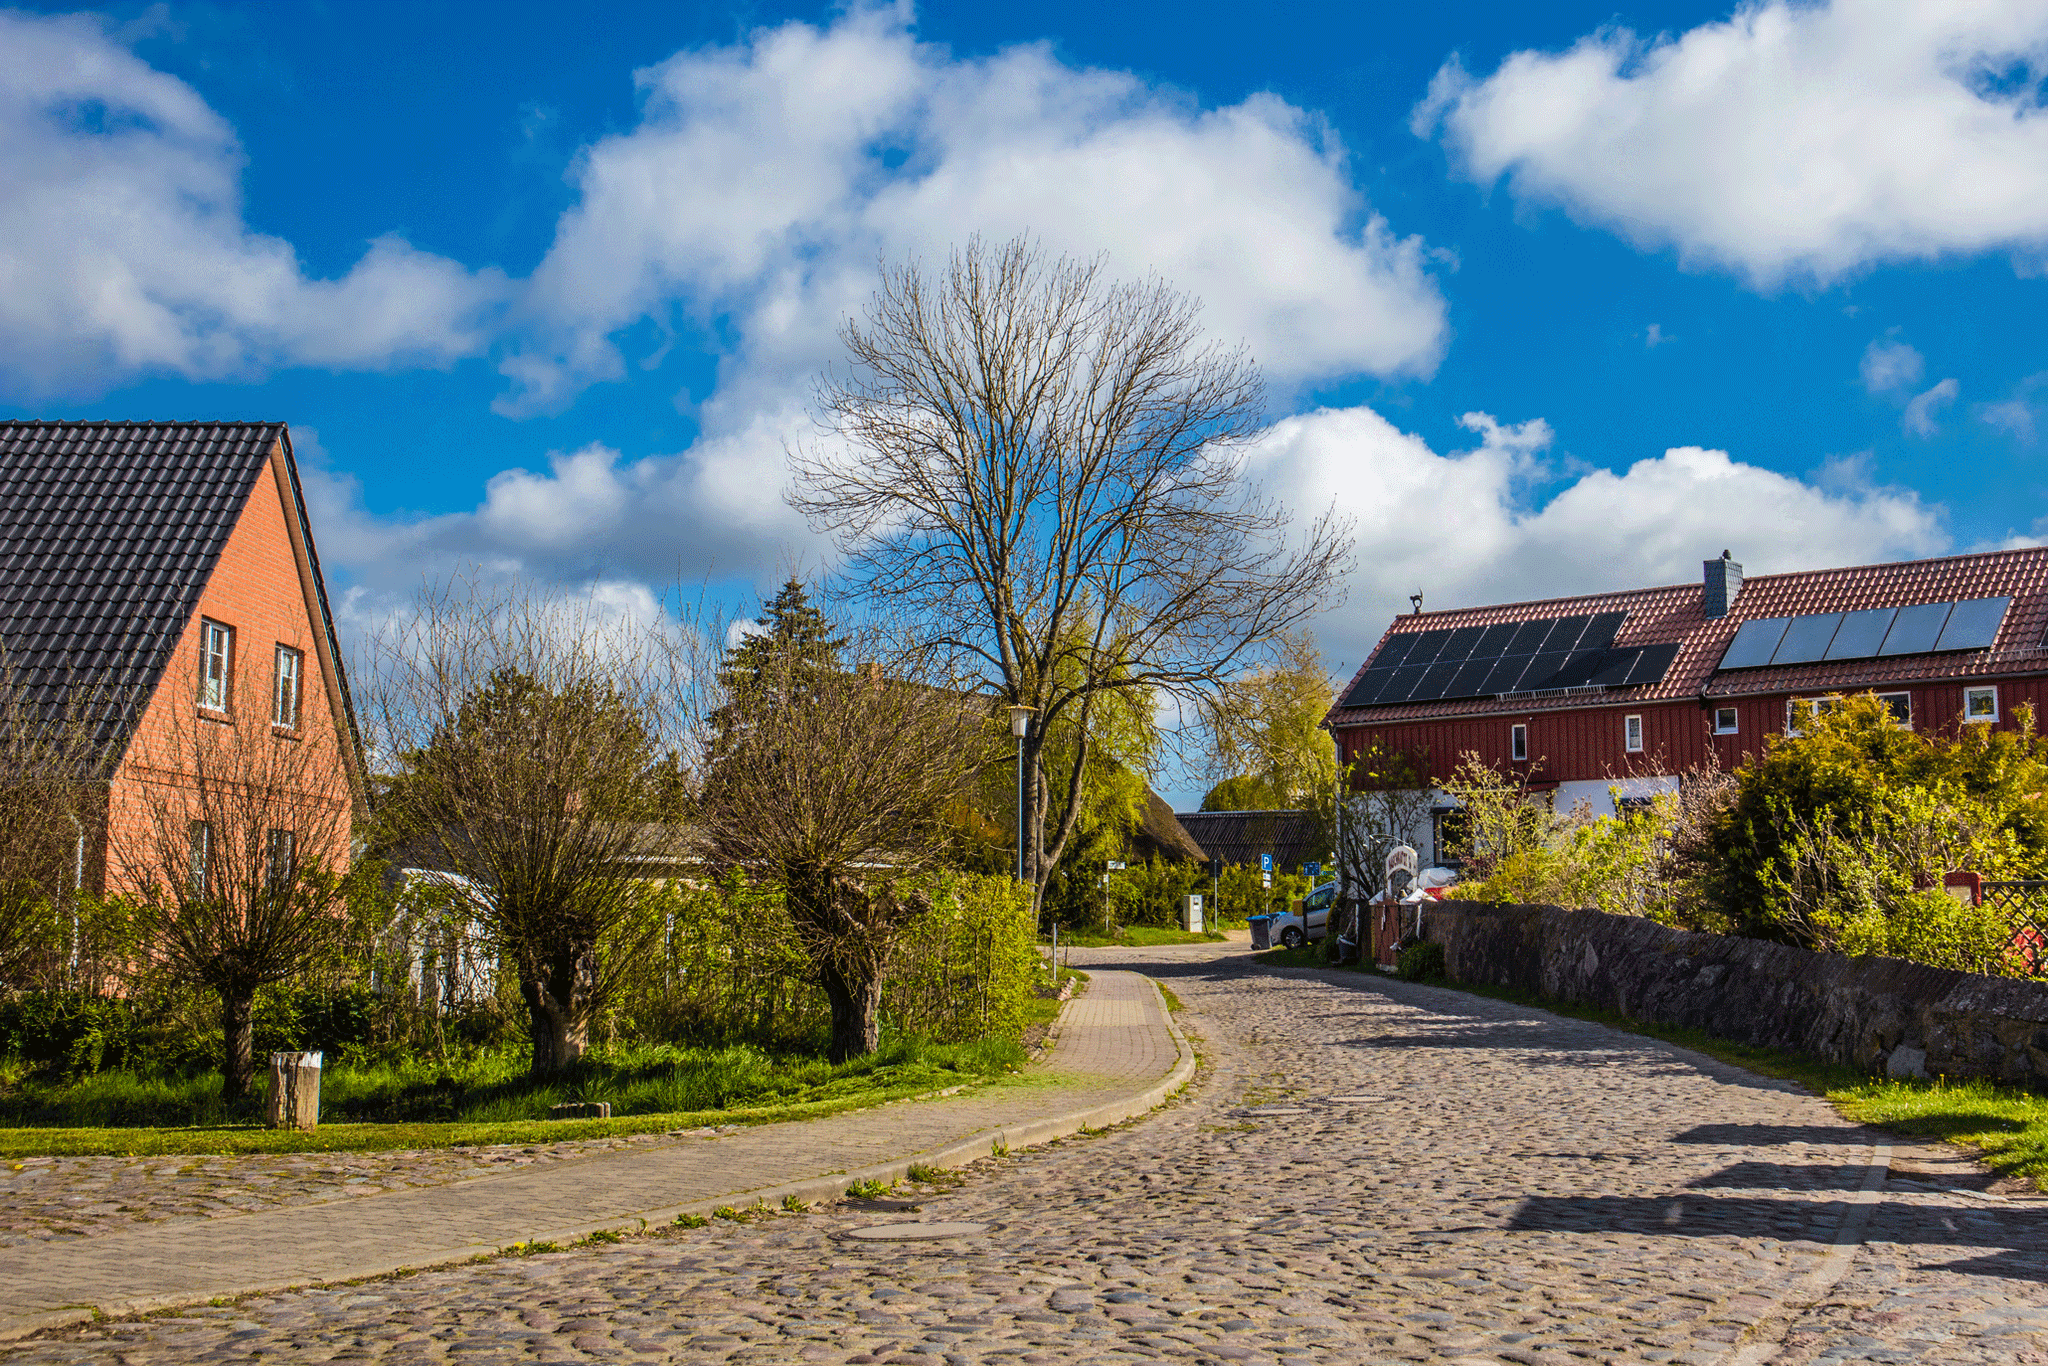 Das Bild zeigt die Dorfstraße im kleinen Ort Krummin auf der Insel Usedom.